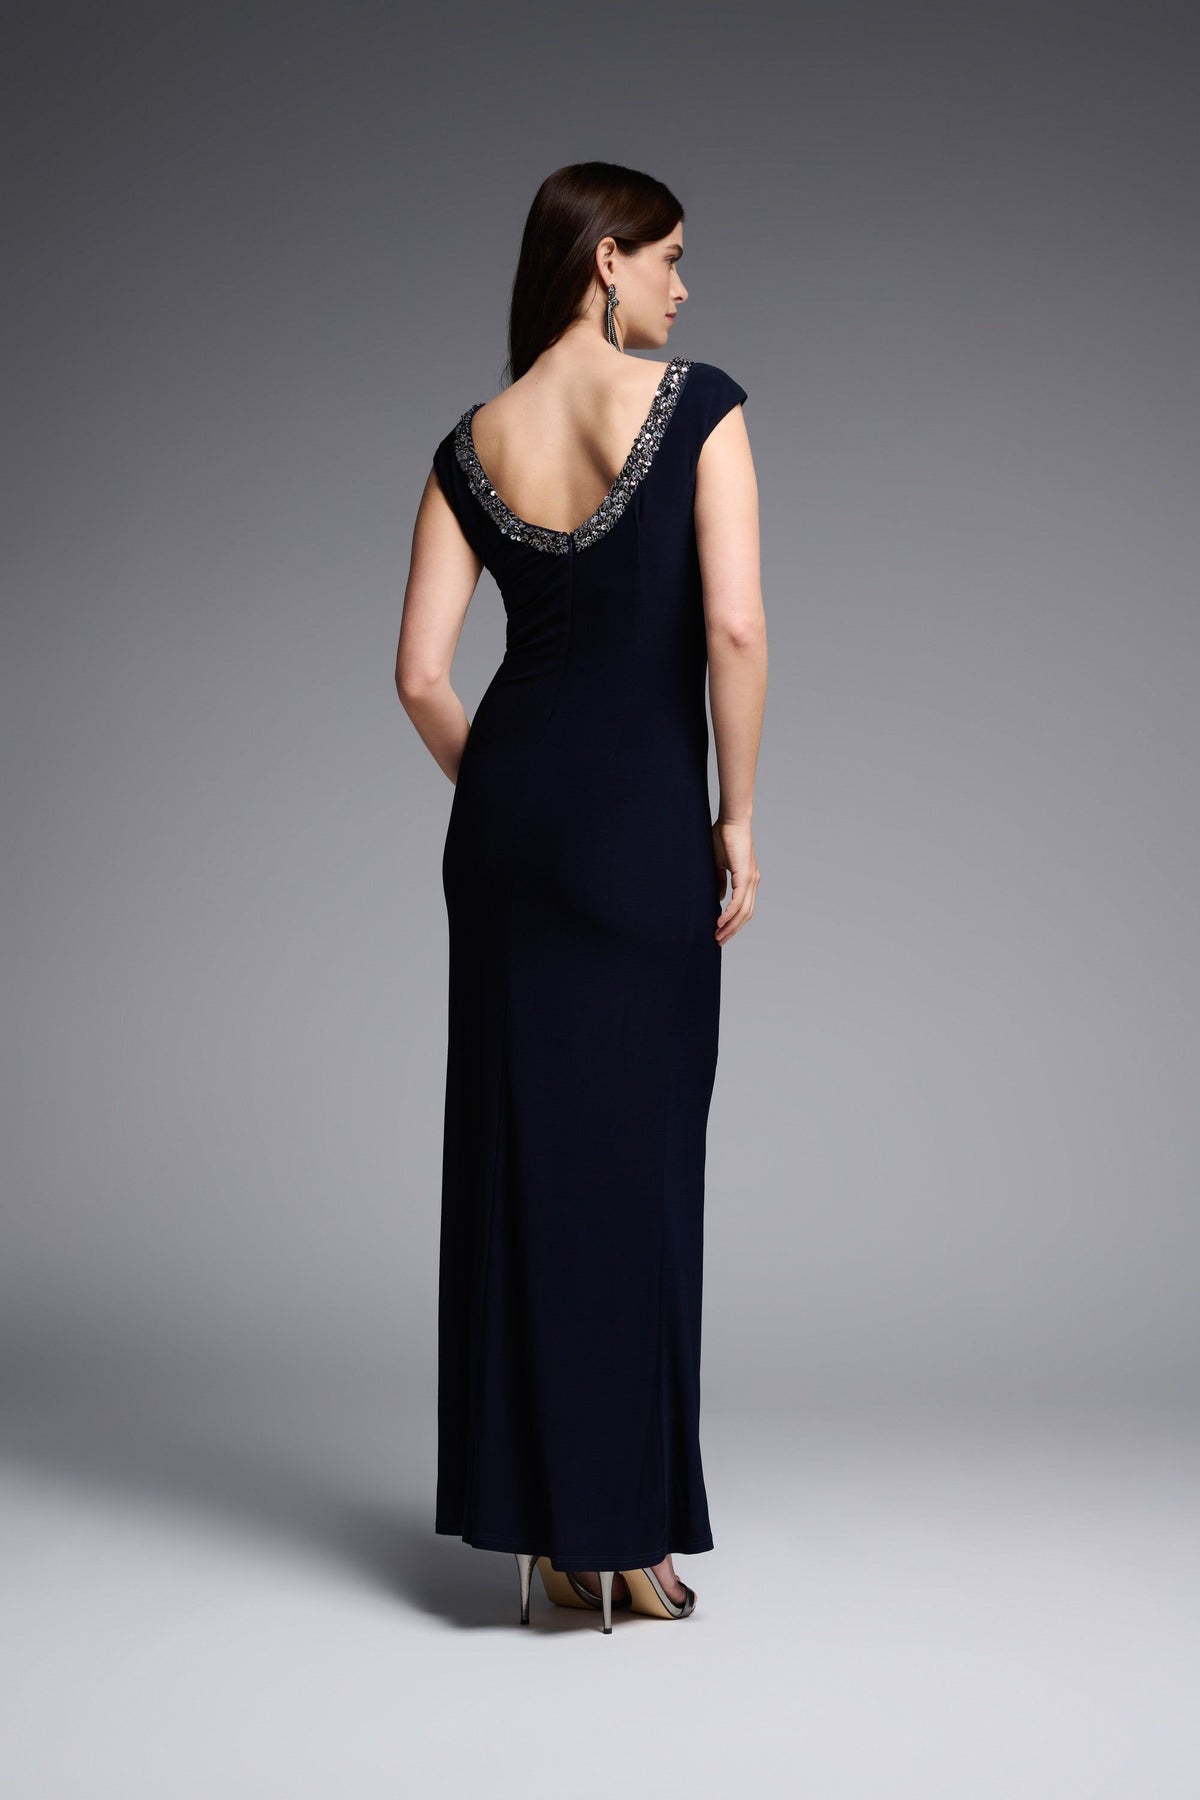 Joseph Ribkoff Signature Embellished Neckline Dress - Style 231709, back